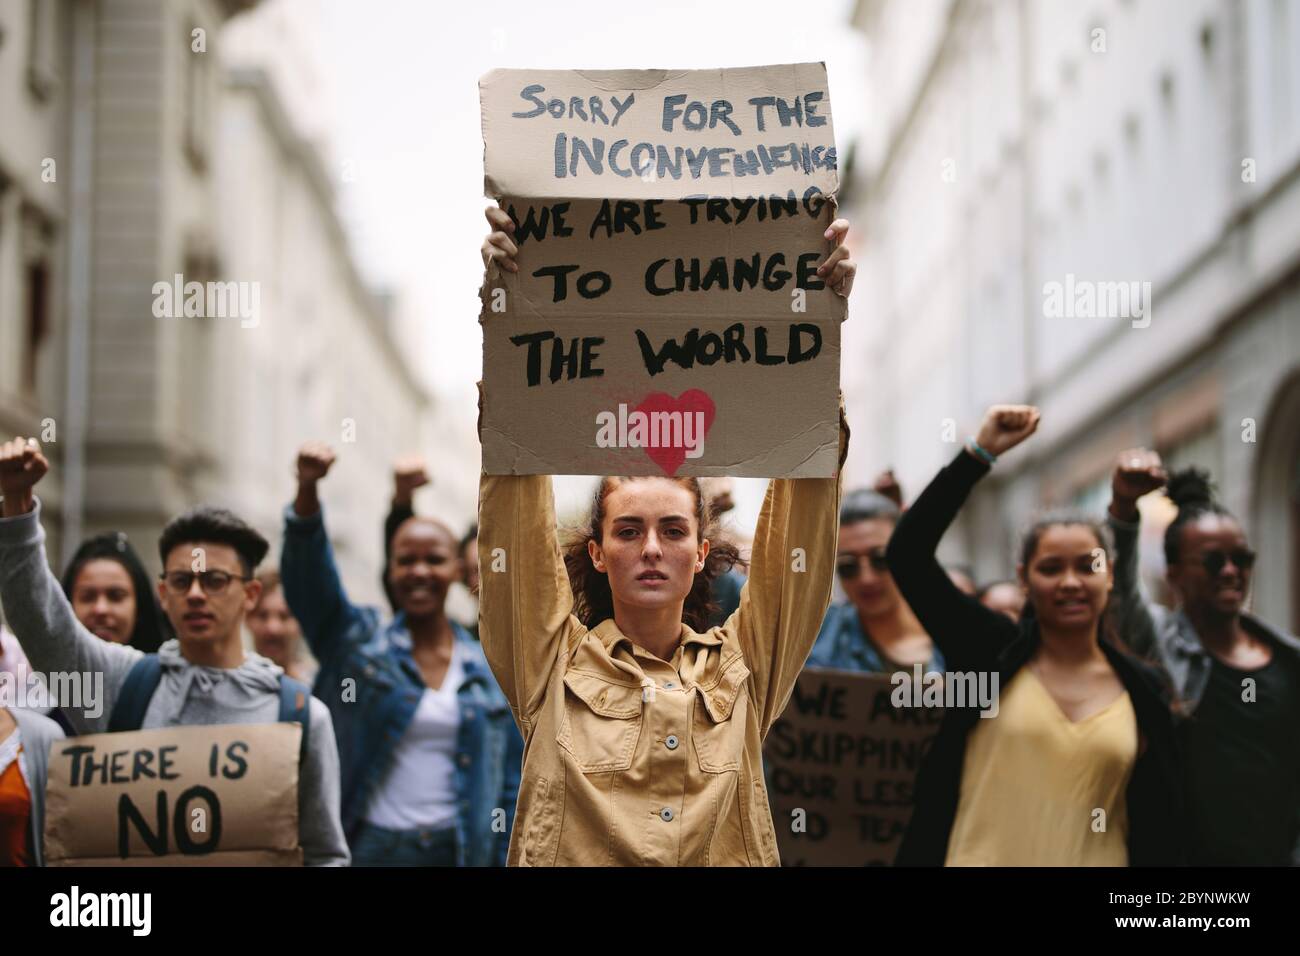 Jeune étudiant tenant une affiche et protestant. Groupe de manifestants protestant contre le changement climatique. Banque D'Images